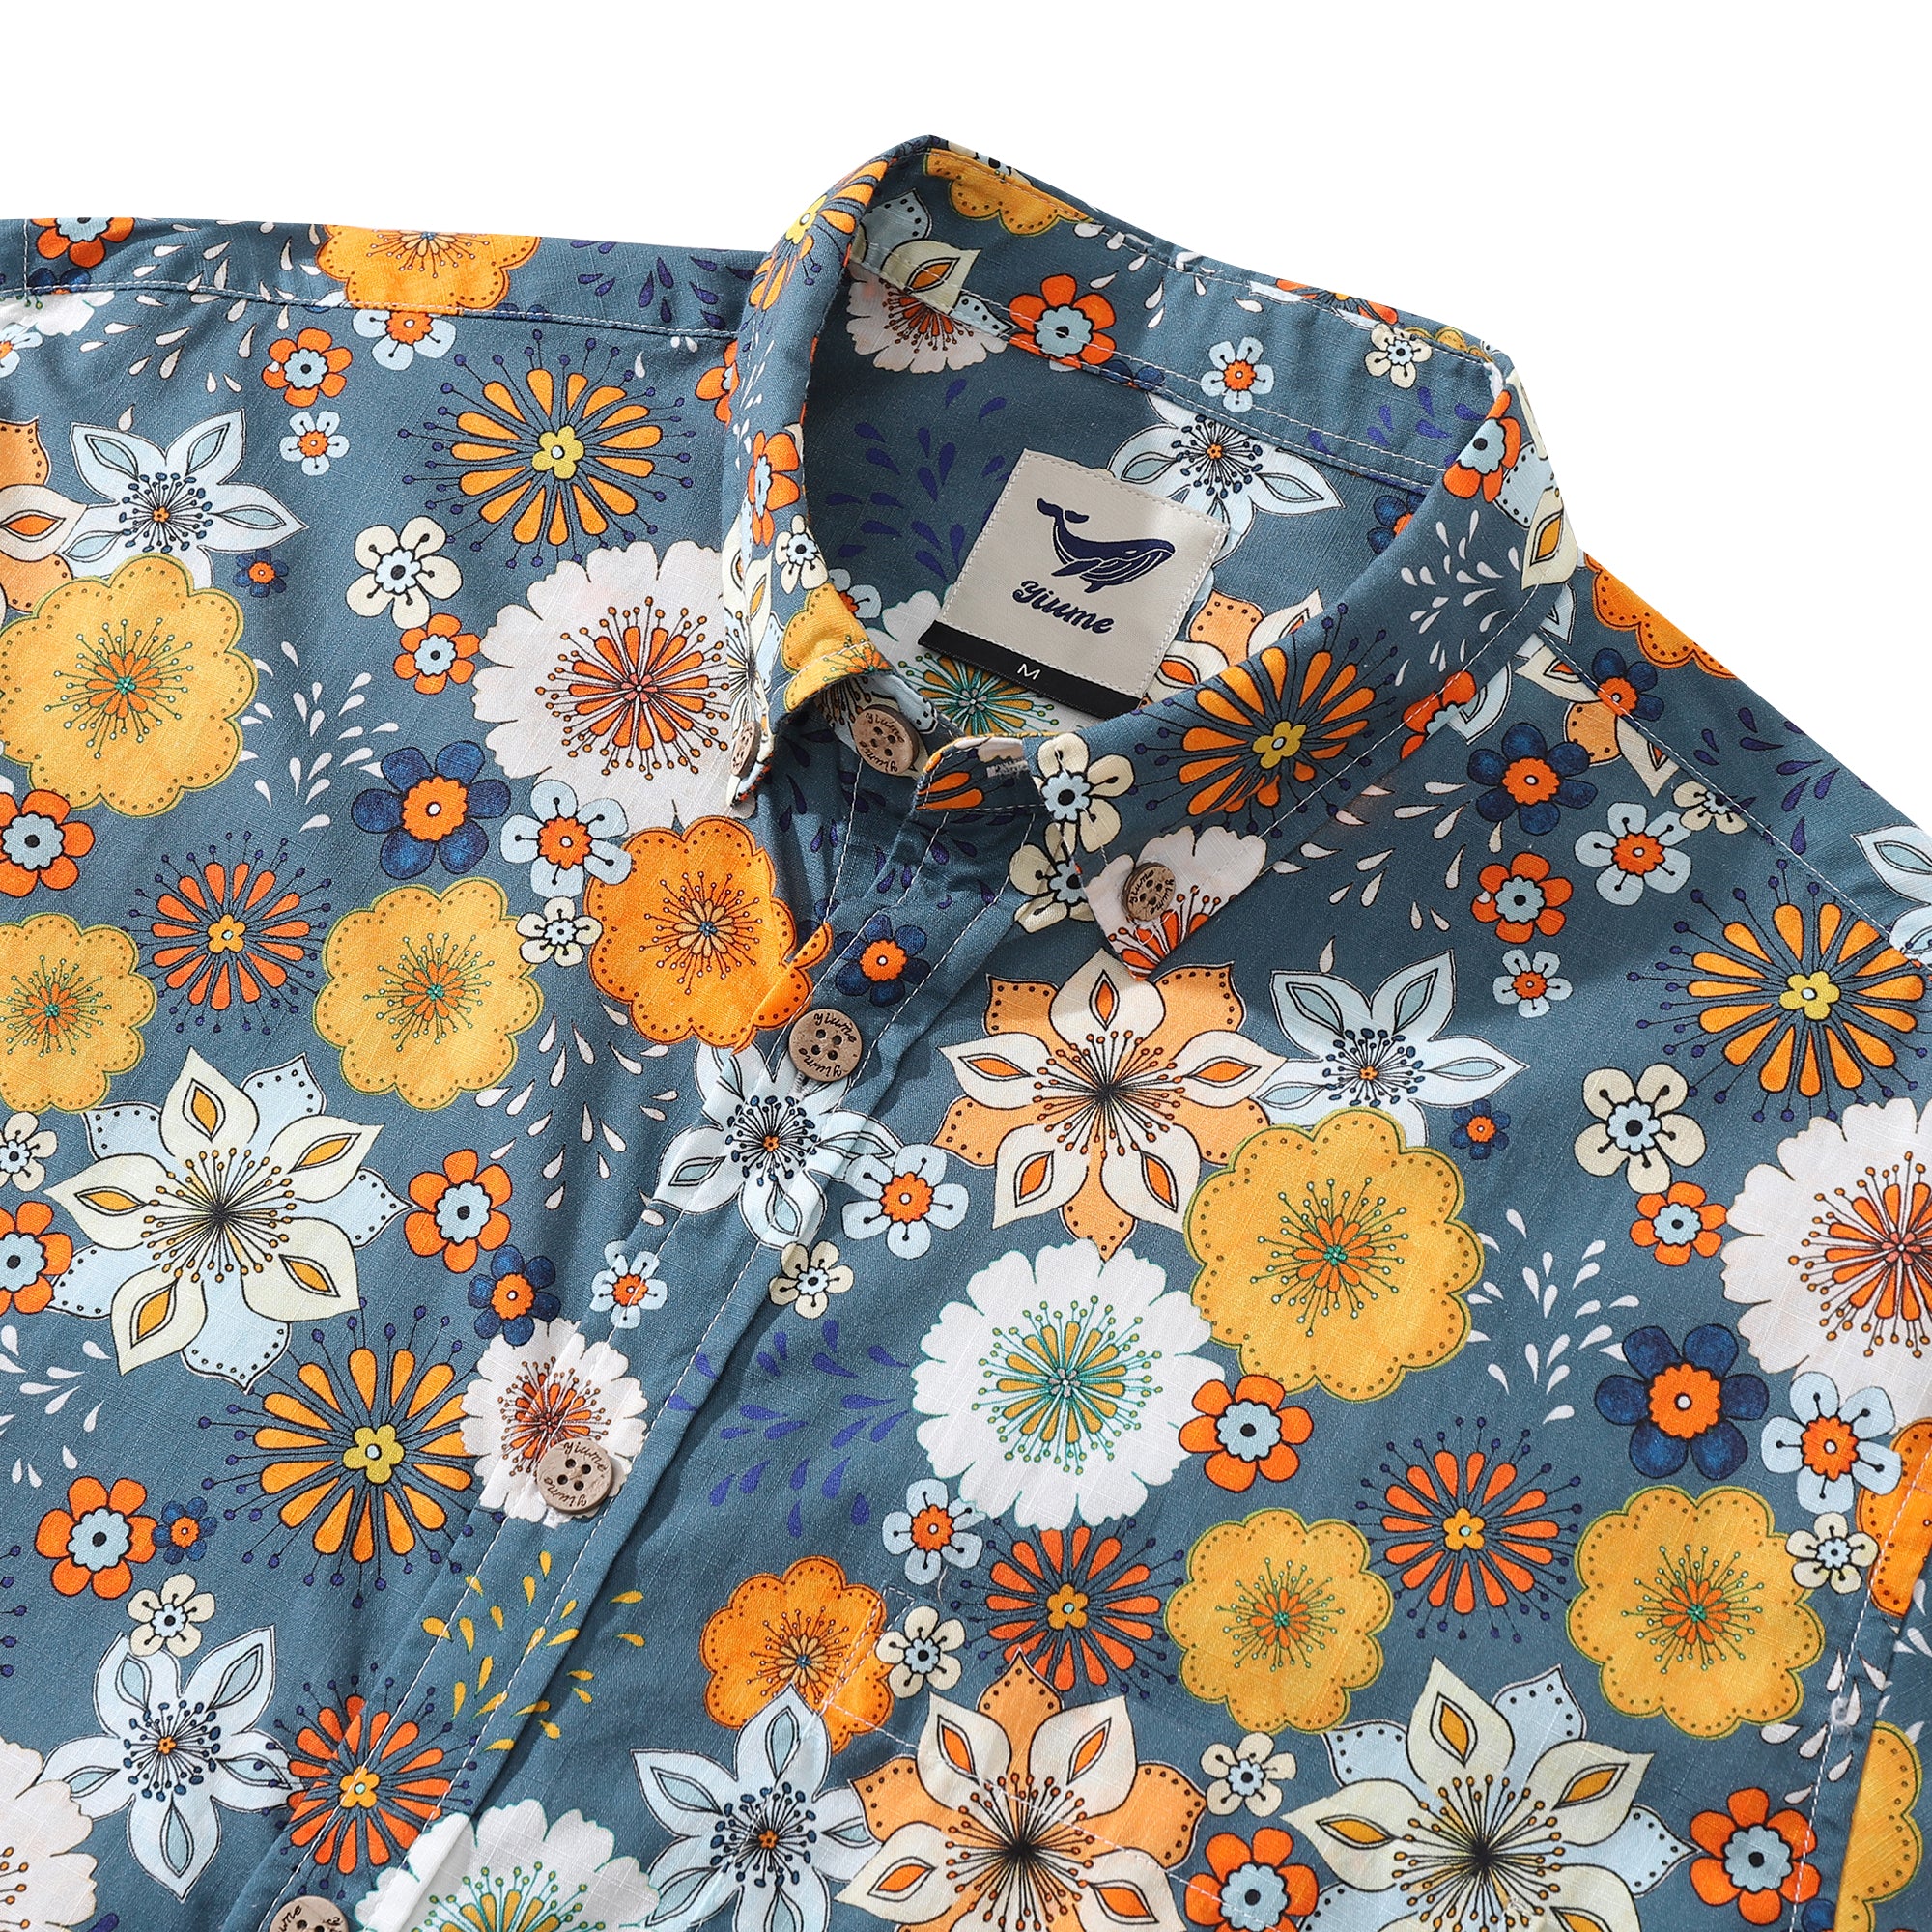 Herren-Hawaiihemd mit 60er-Jahre-Blumendruck von Samantha O' Malley, langärmliges Aloha-Hemd aus Baumwolle mit Knopfleiste